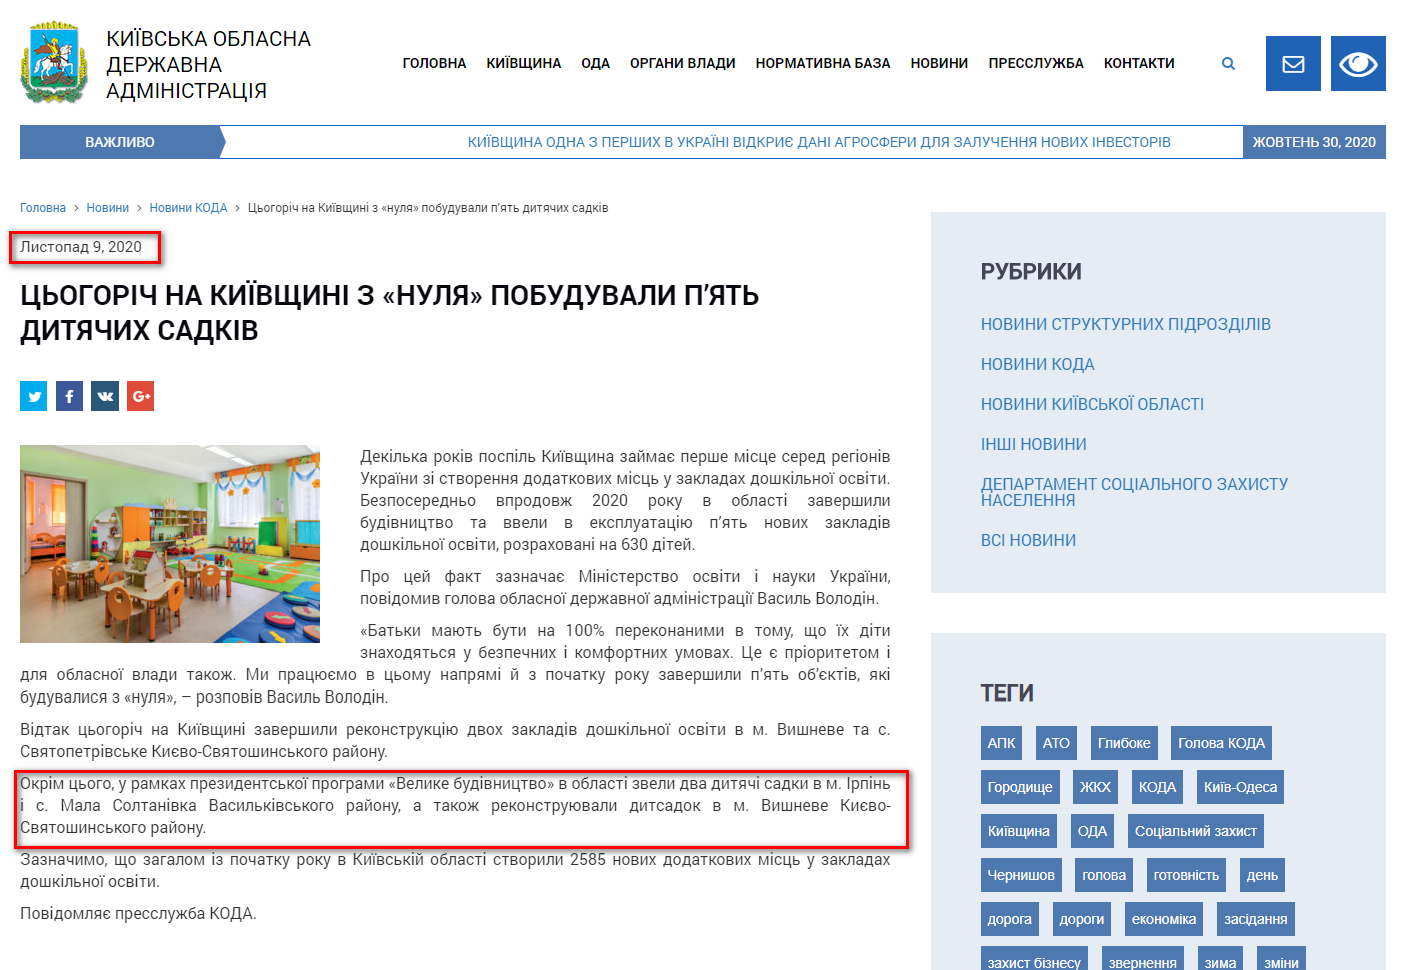 http://koda.gov.ua/news/cogorich-na-kiivshhini-z-nulya-pobuduv/